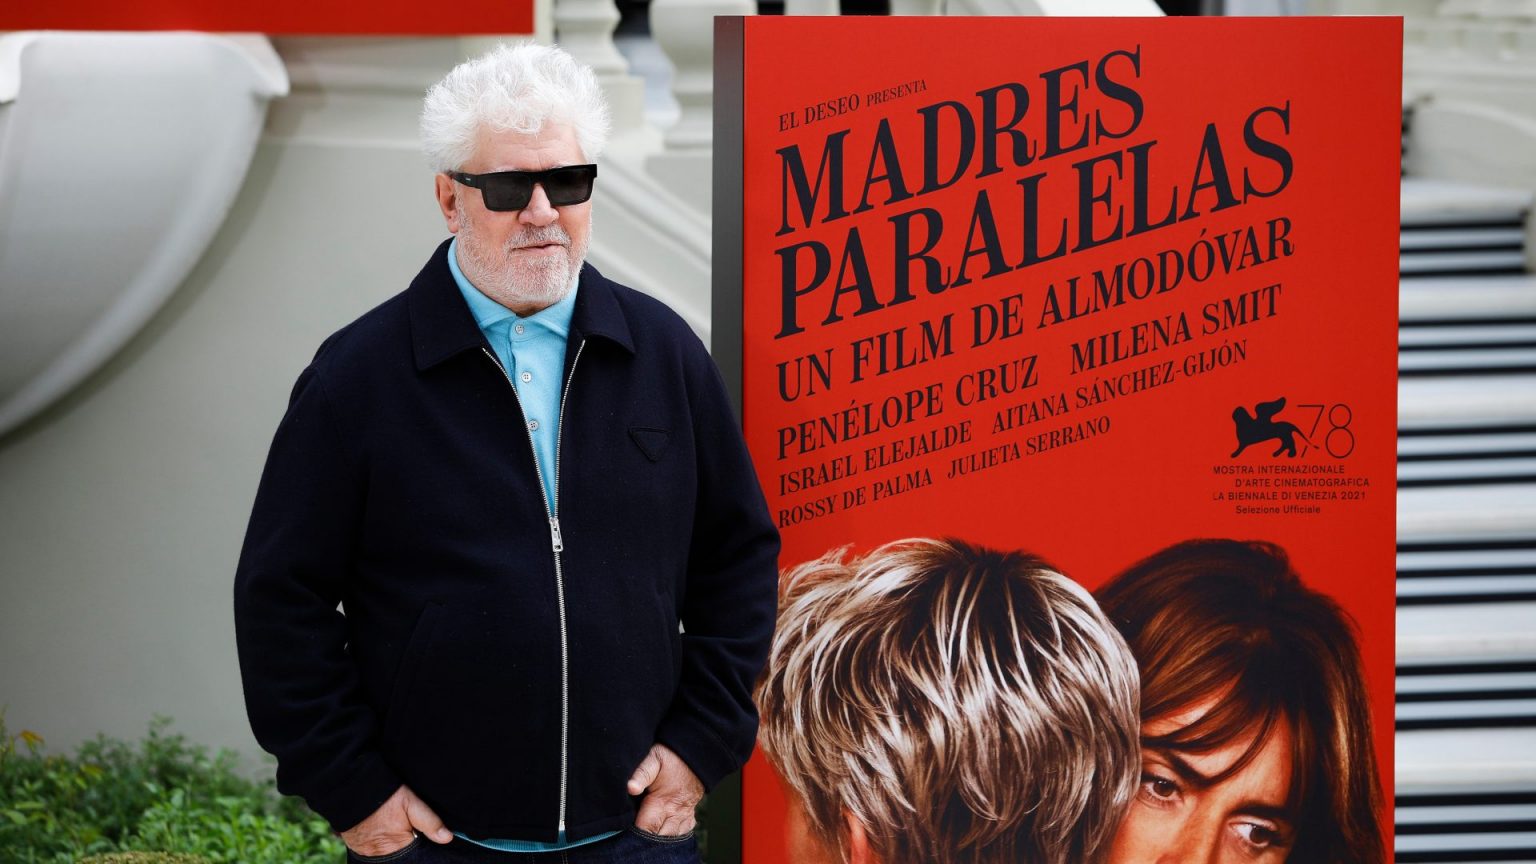 ‘Madres paralelas’, el peor estreno de Pedro Almodóvar desde 1989